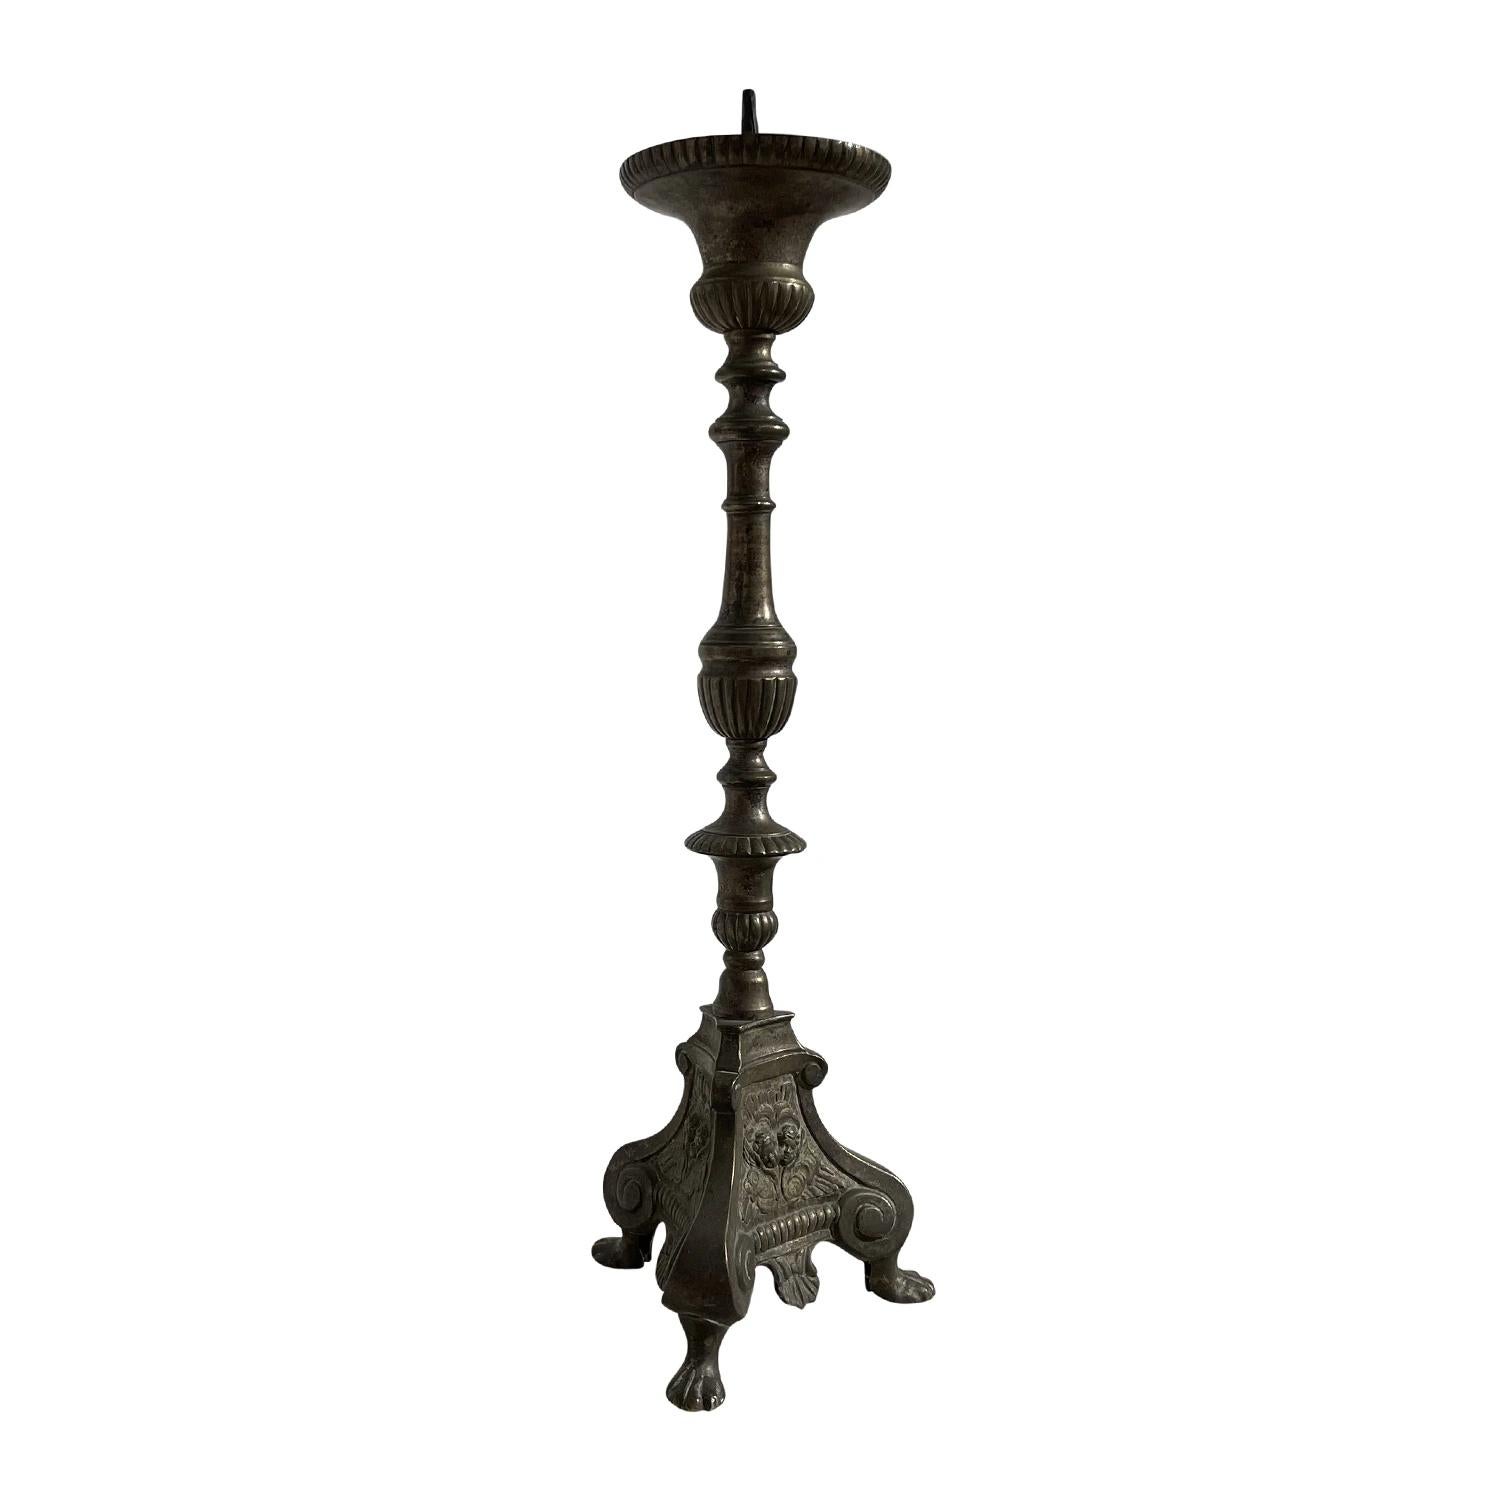 Ein antiker italienischer Altarleuchter mit religiöser Symbolik aus handgefertigter Bronze, in gutem Zustand. Der hohe, detailliert gearbeitete Kerzenständer wird von einem dreieckigen Sockel getragen und steht auf zwei gewölbten Füßen. Alters- und